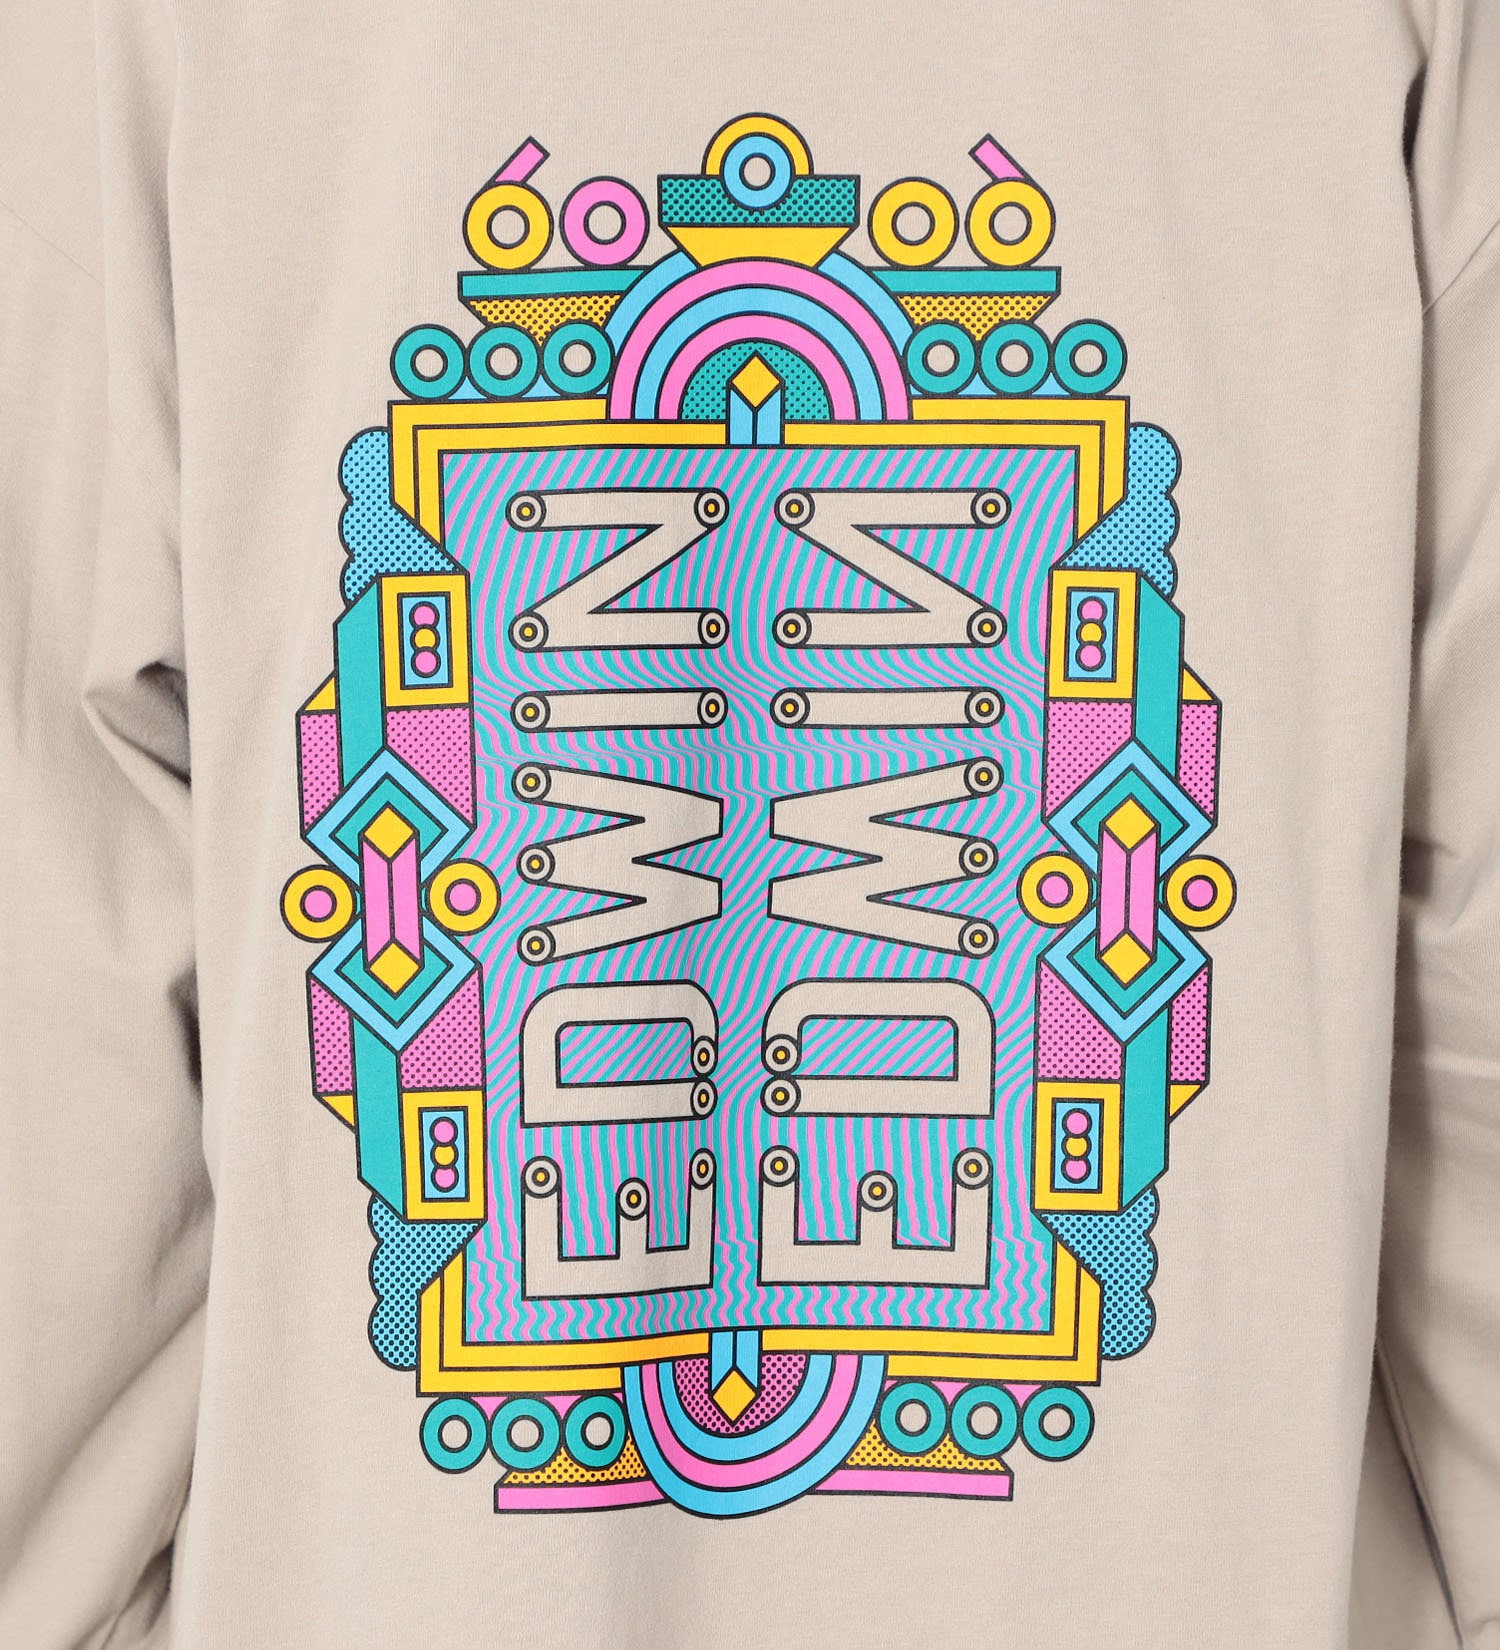 EDWIN(エドウイン)の【SALE】【ユニセックス】EDWIN x Supermundane アーティストコラボTシャツ|トップス/Tシャツ/カットソー/メンズ|ライトグレー